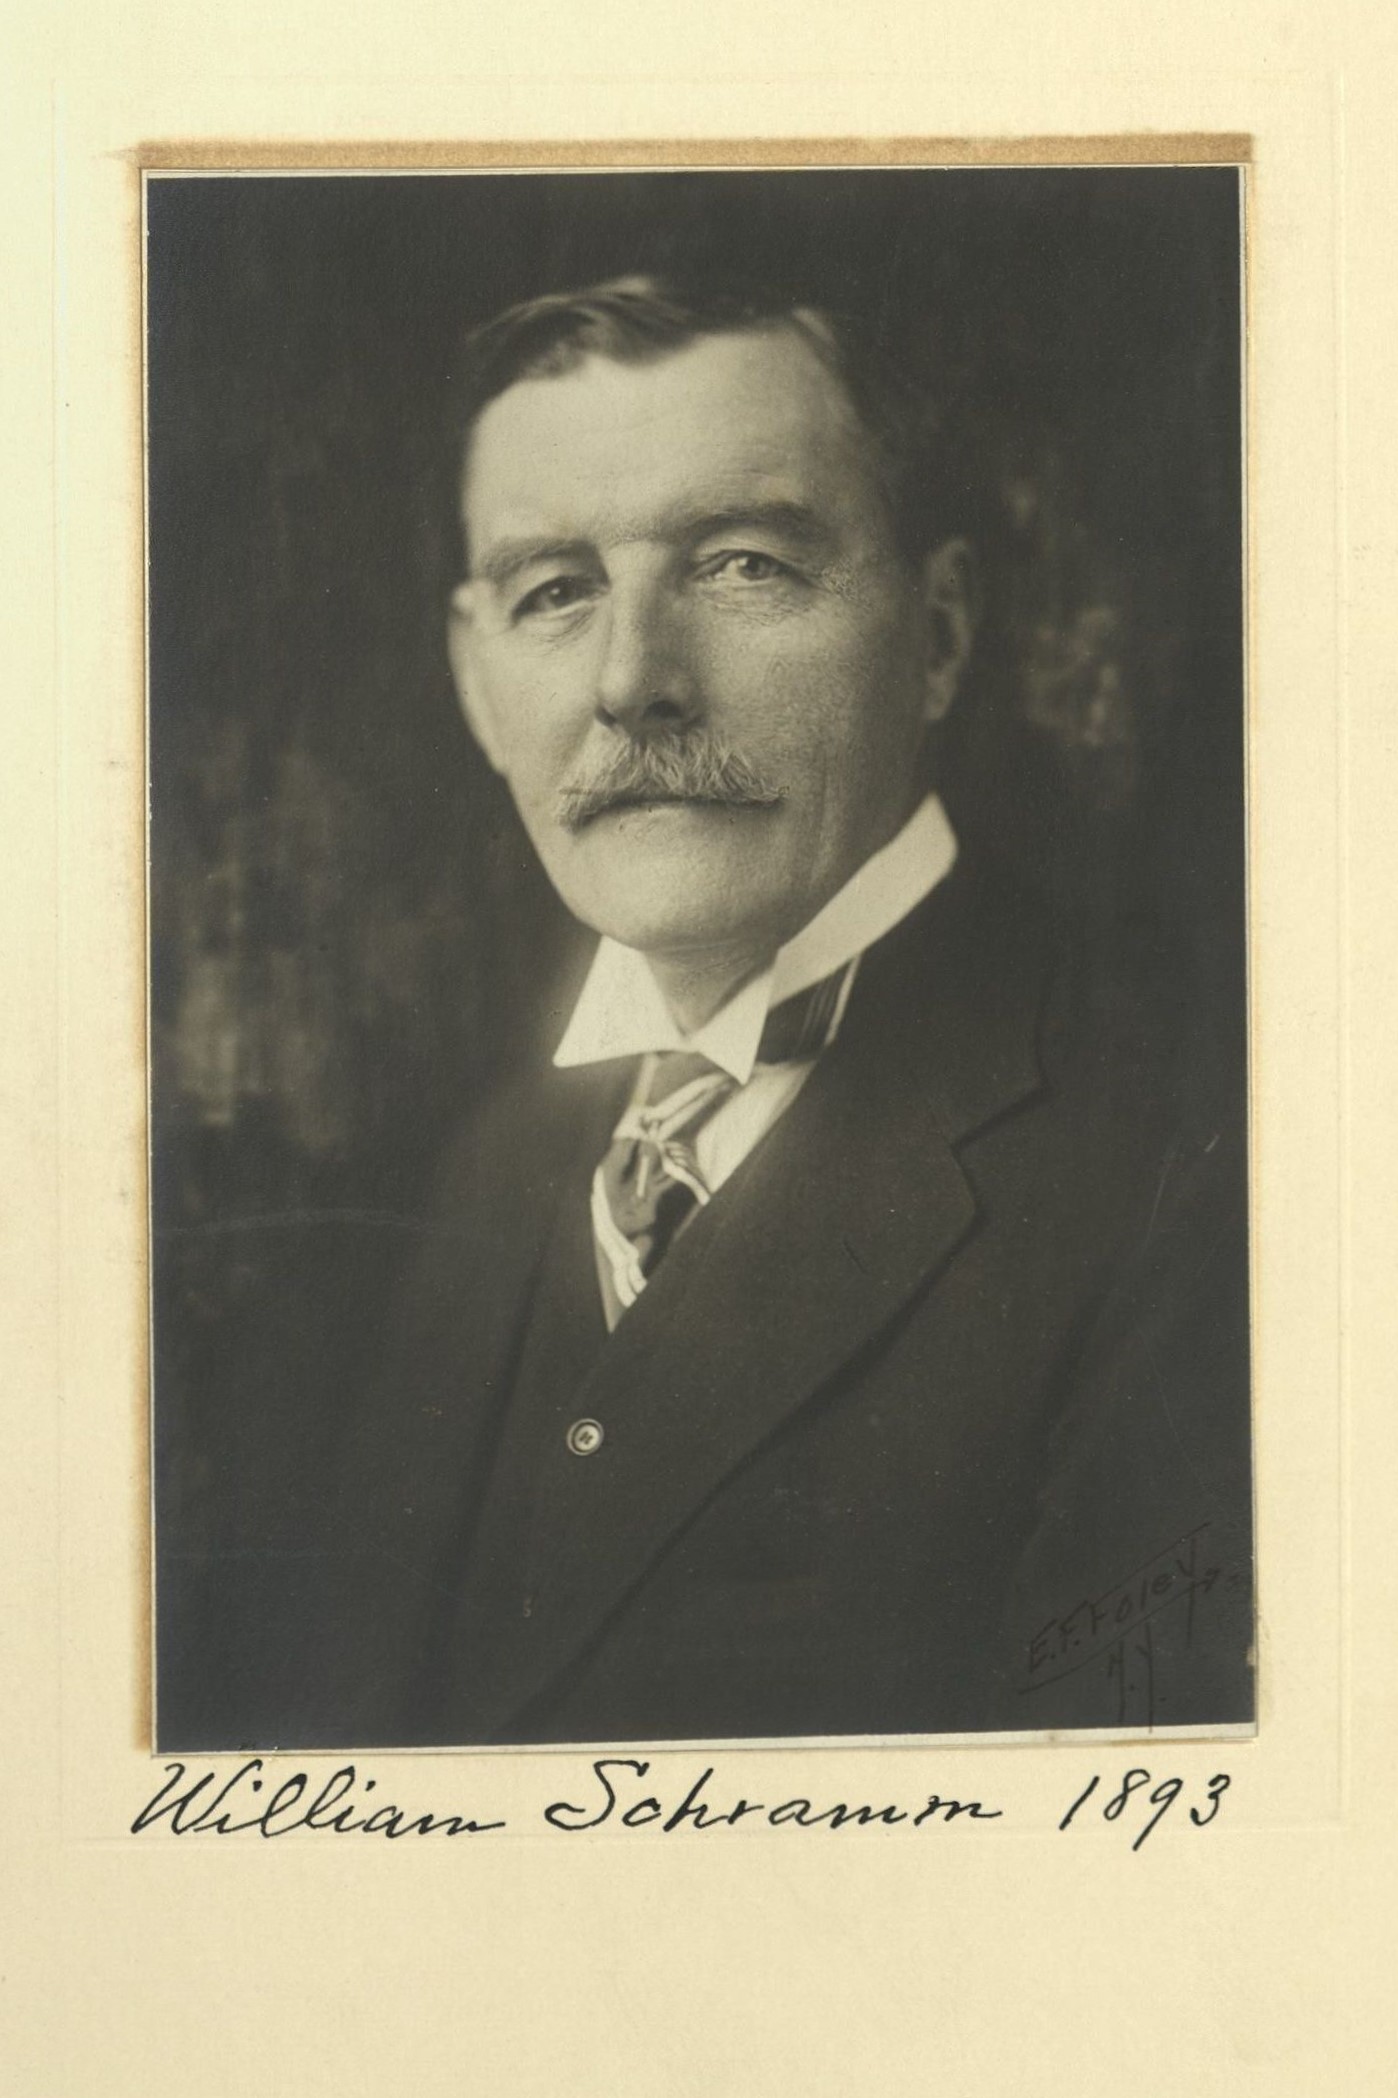 Member portrait of William Schramm